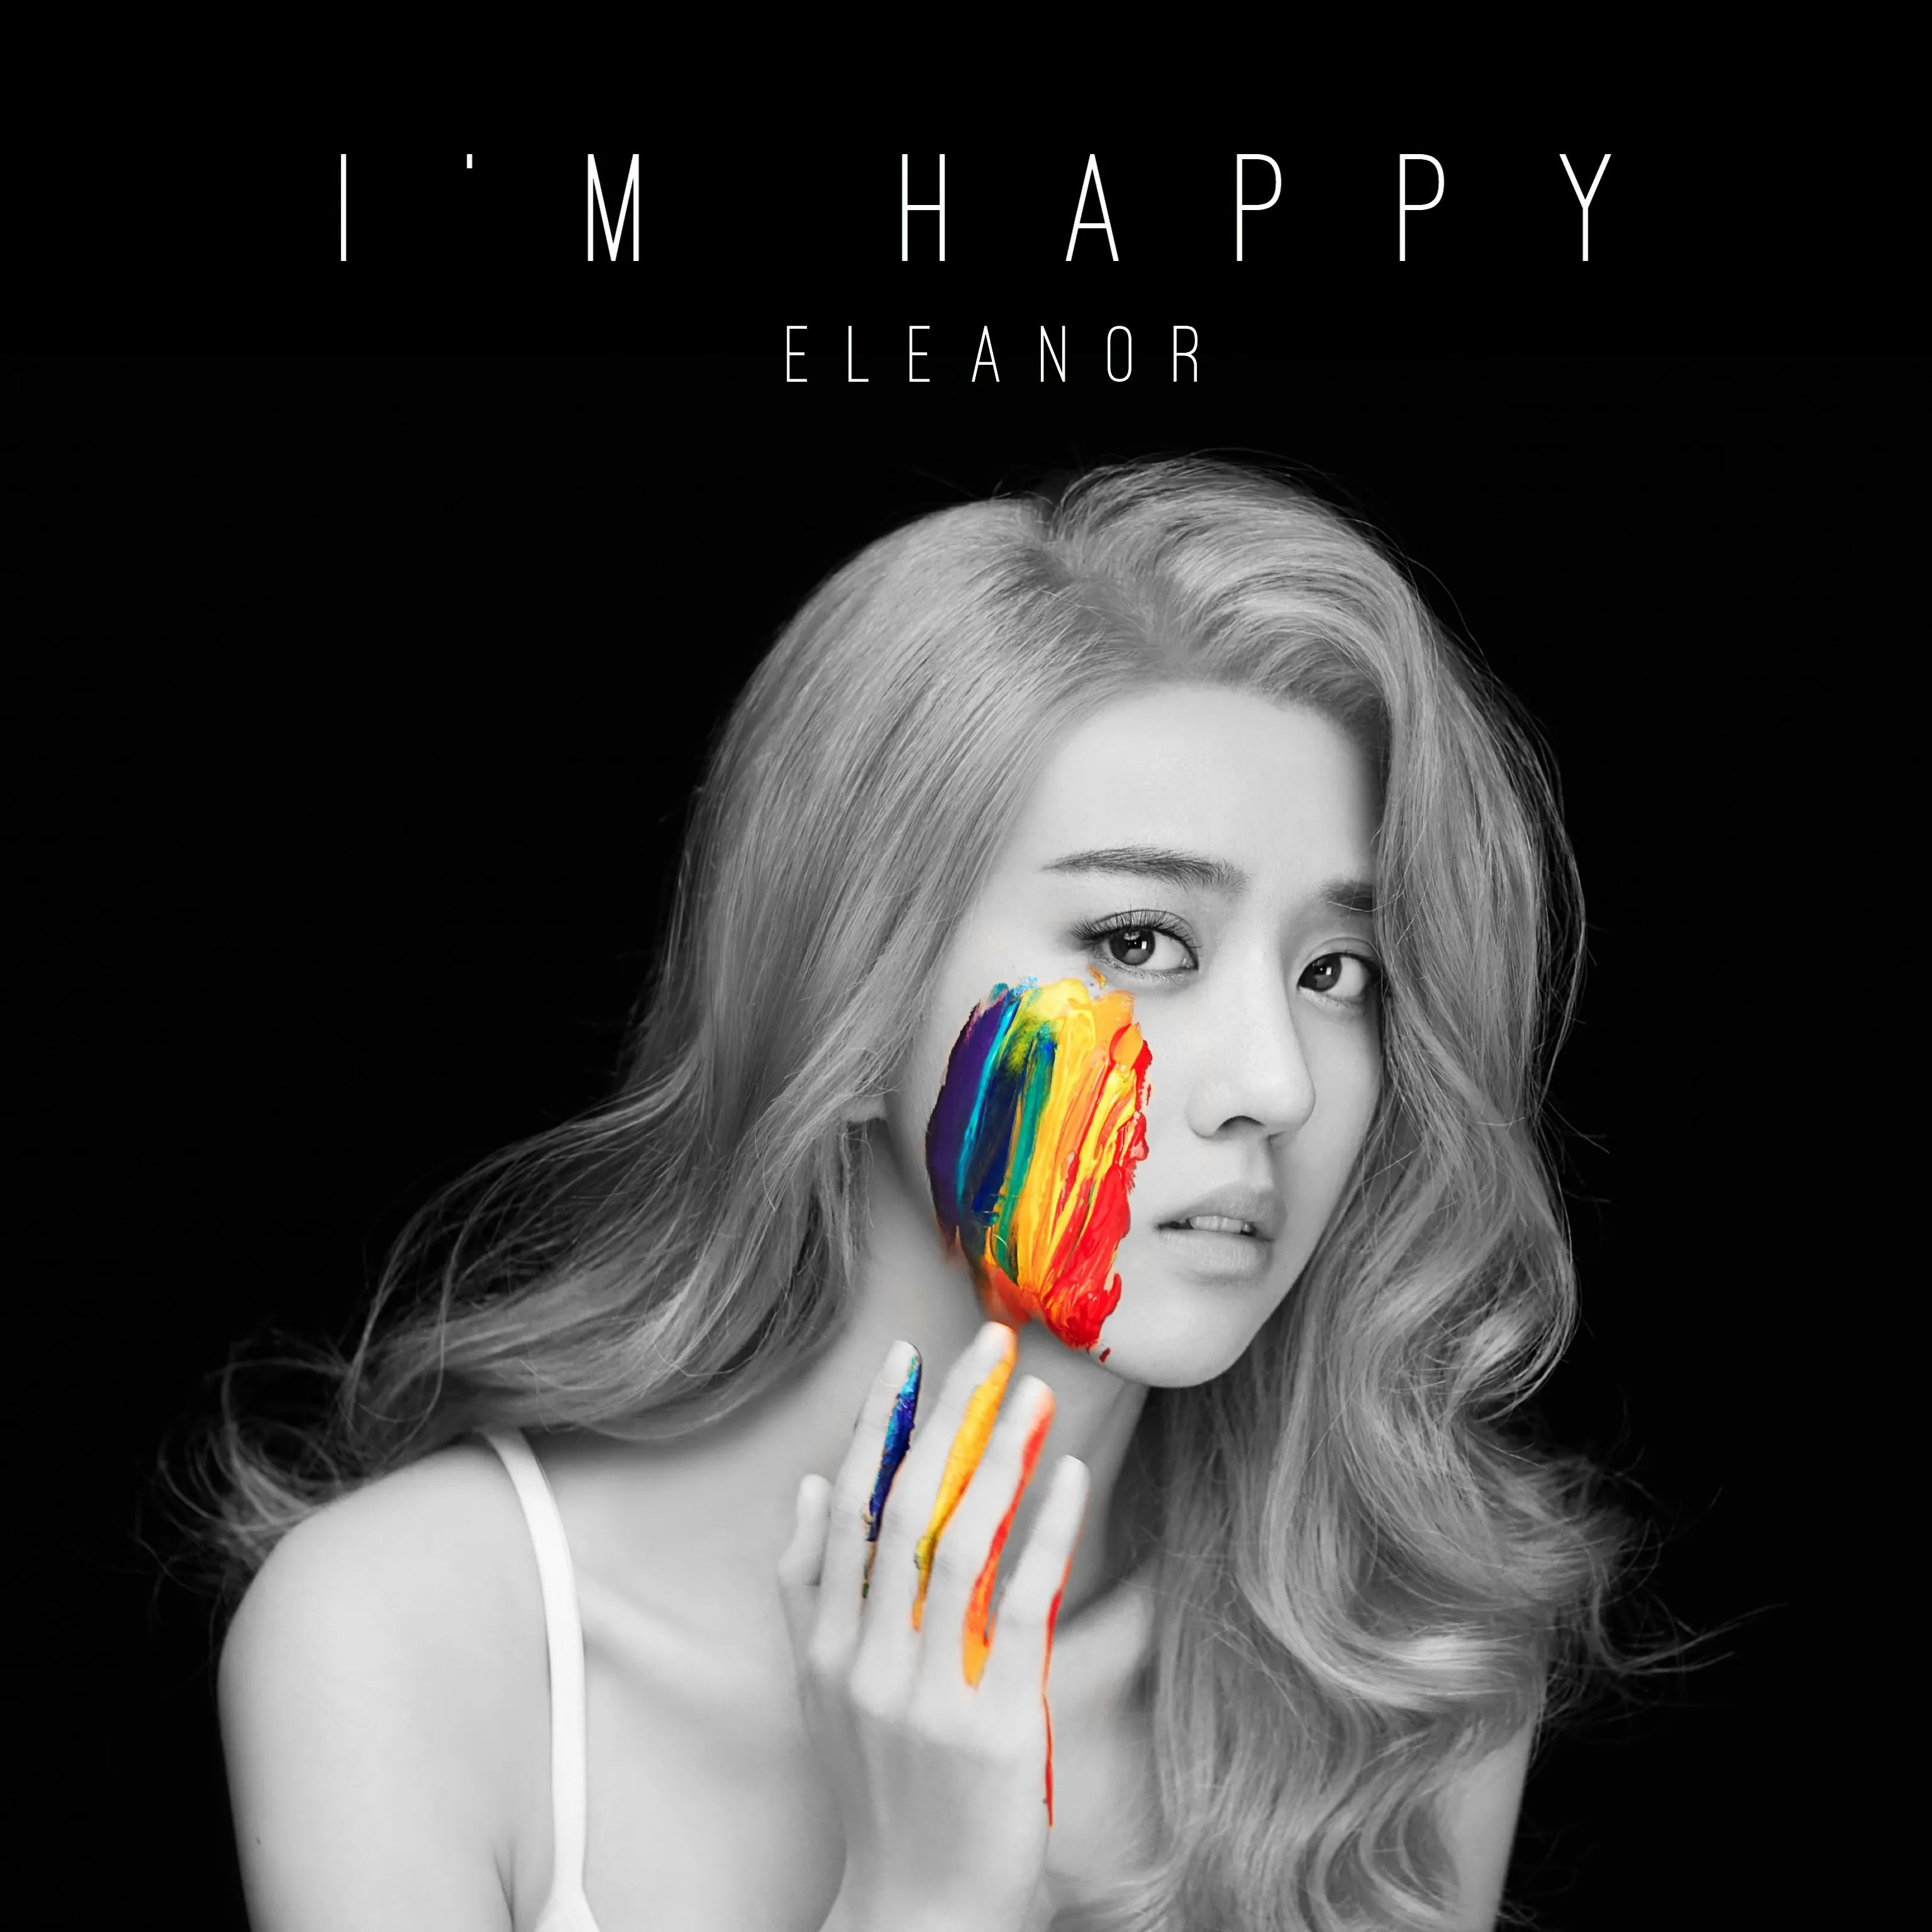  Eleanor Lee .jpg